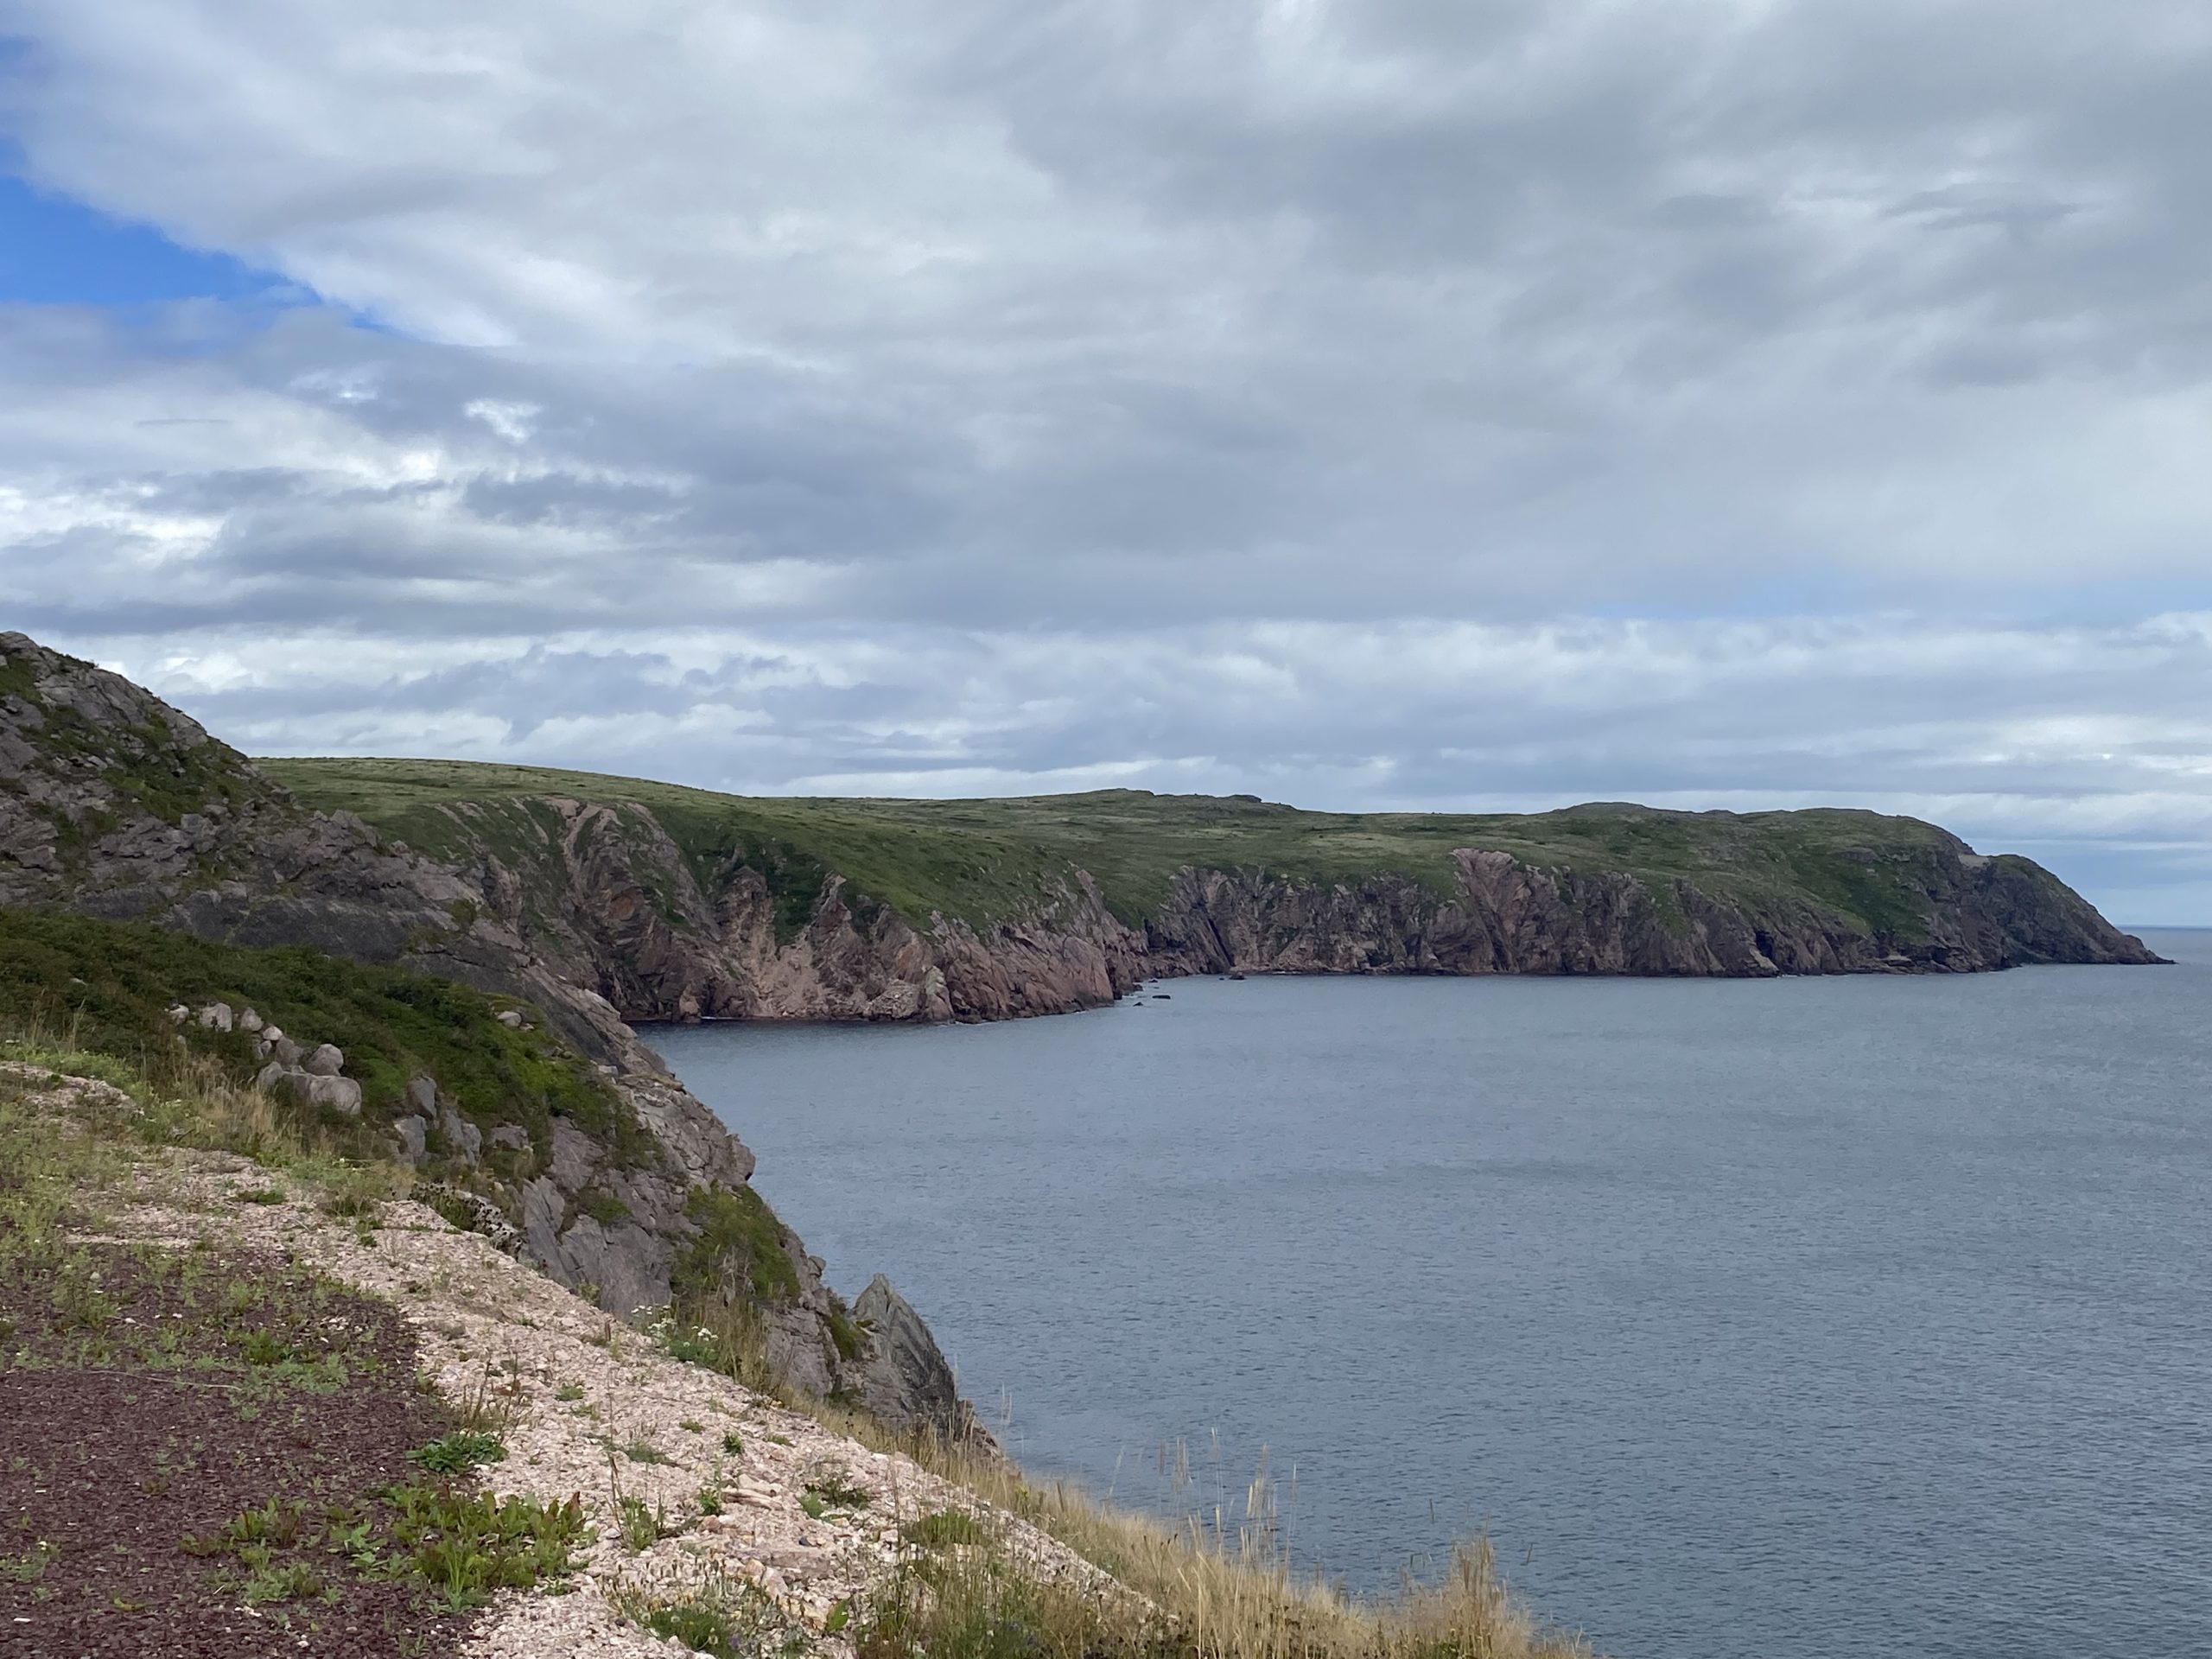 The coast north of Bay de Verde in Newfoundland.